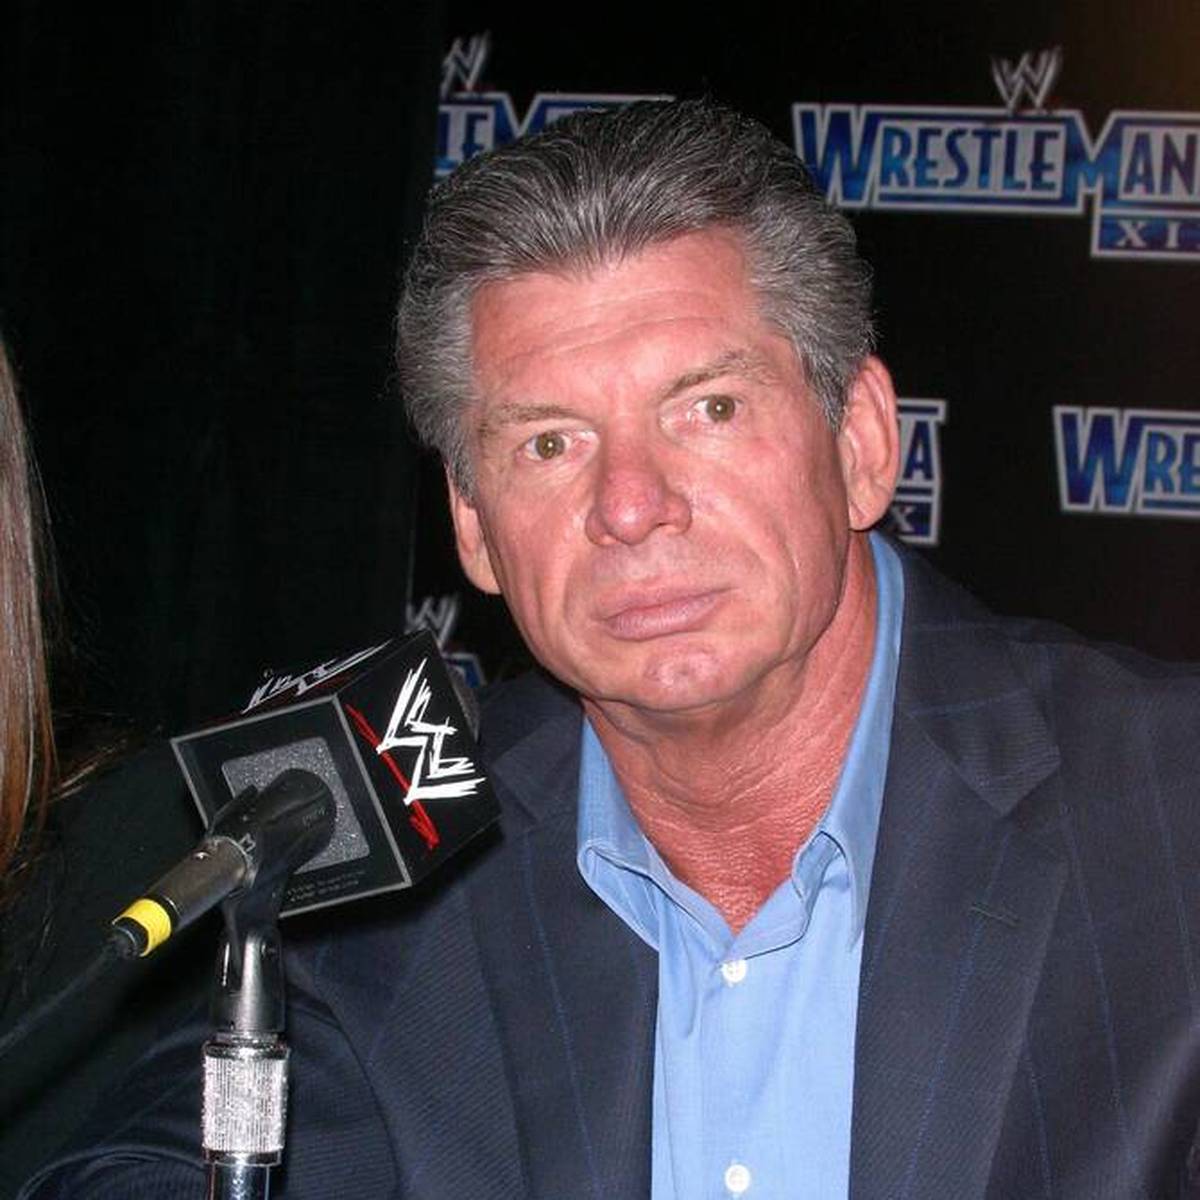 Der langjährige WWE-Boss Vince McMahon gerät weiter in Bedrängnis: Nach Jahrzehnte langem Schweigen erneuert eine Ex-Ringrichterin einen Vergewaltigungs-Vorwurf.